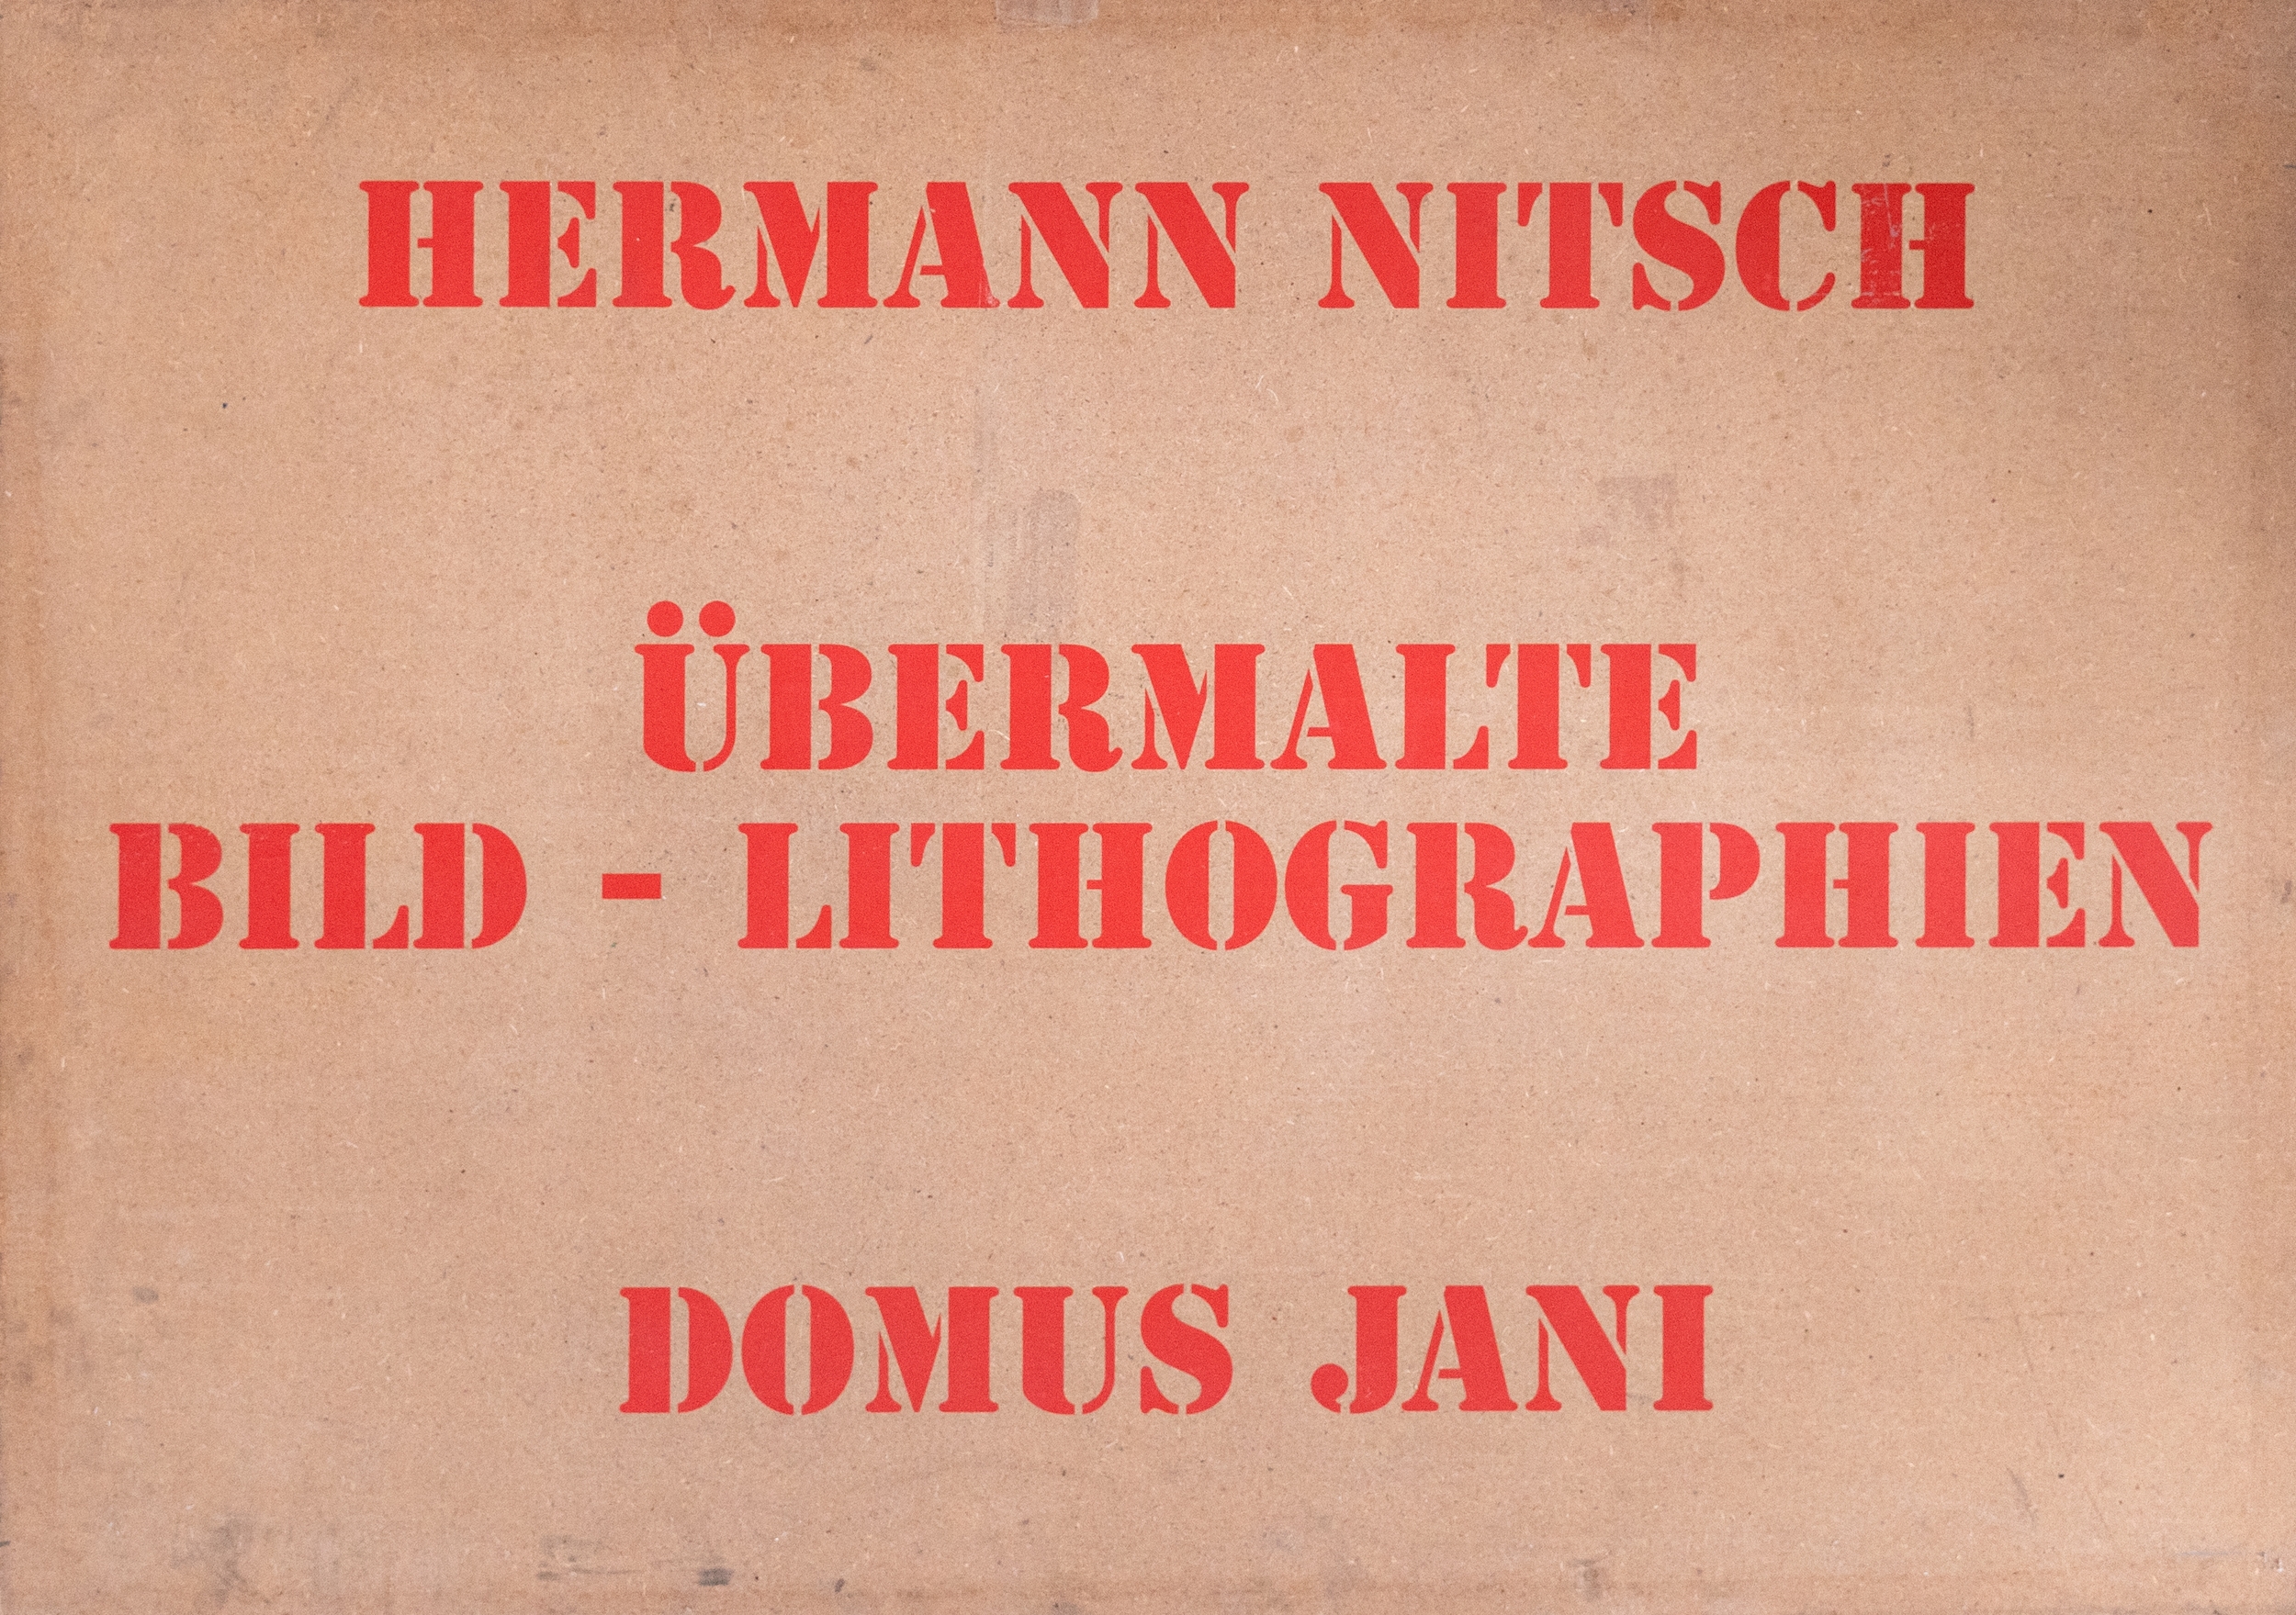 Übermalte Bild-Lithografien by Hermann Nitsch, 1991